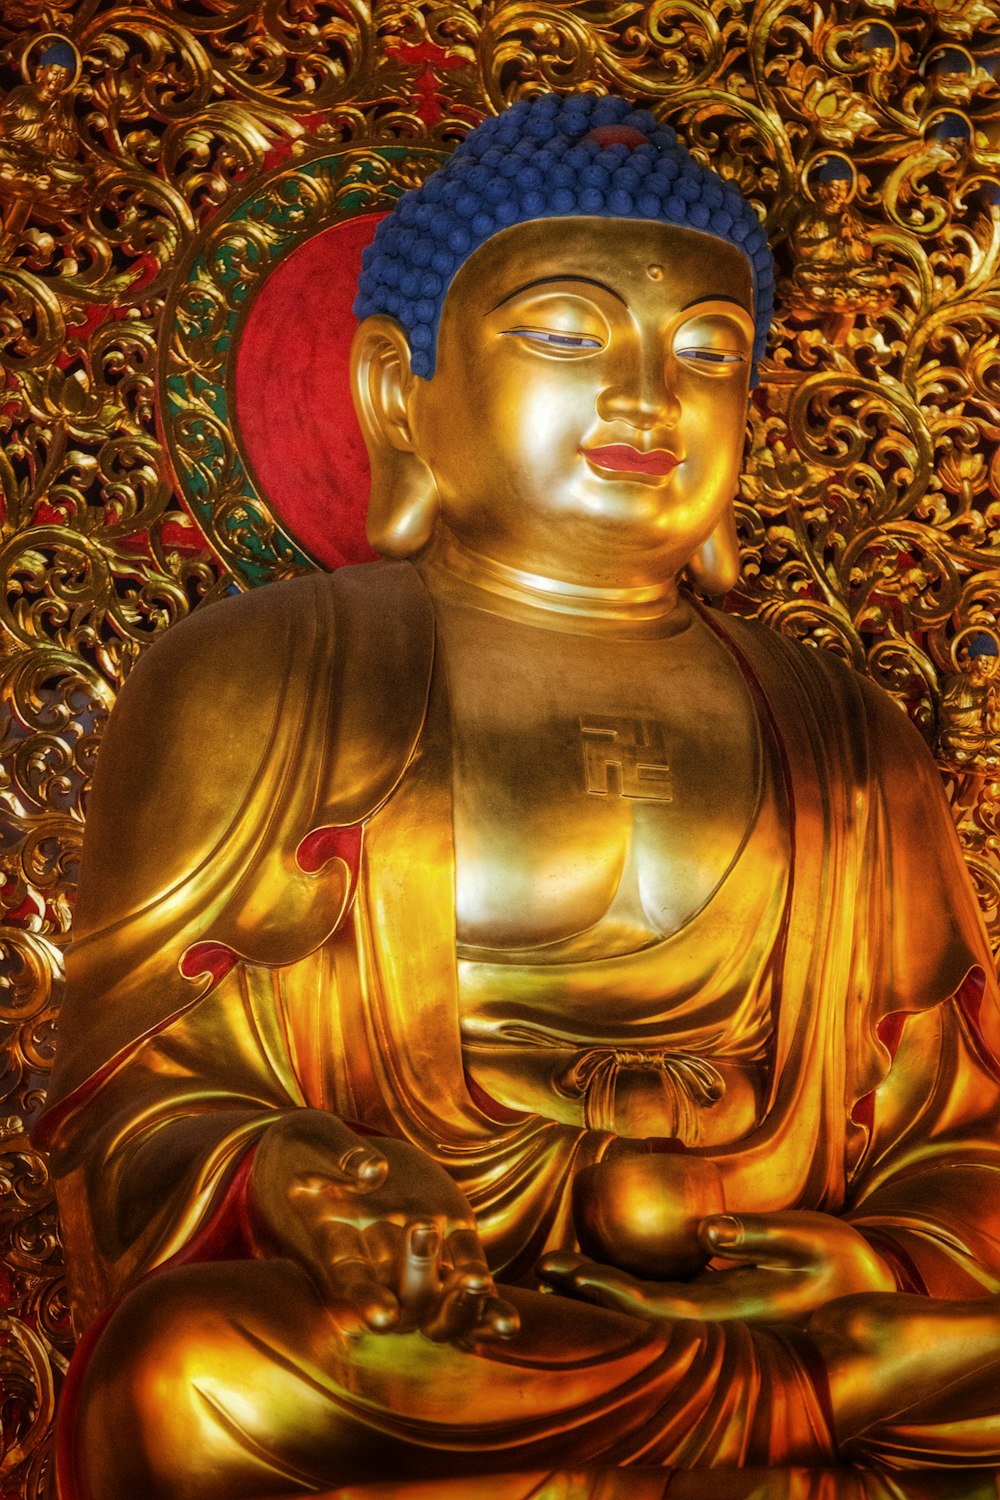 Una estatua dorada de Buda con un sombrero rojo